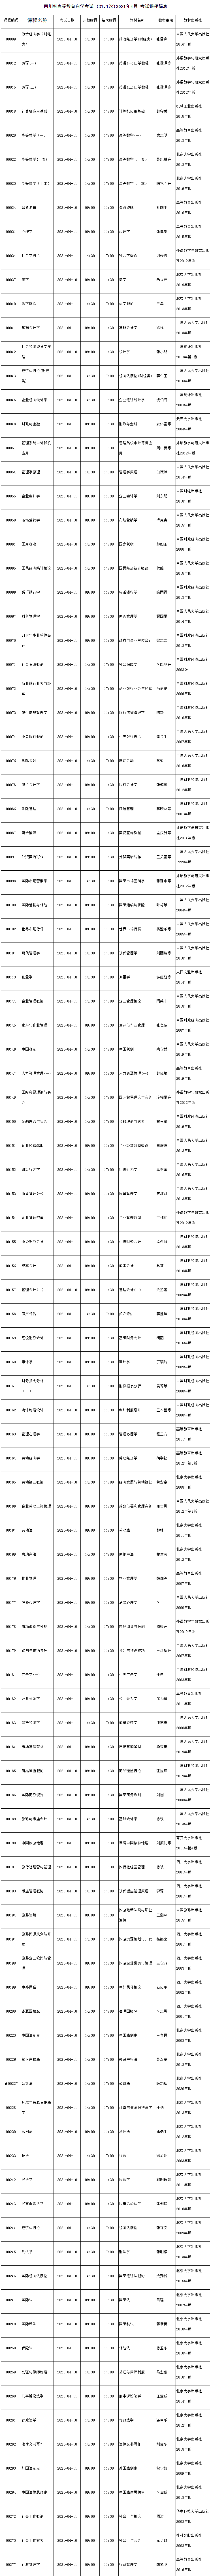 四川省高等教育自学考试2021年4月考试教材表